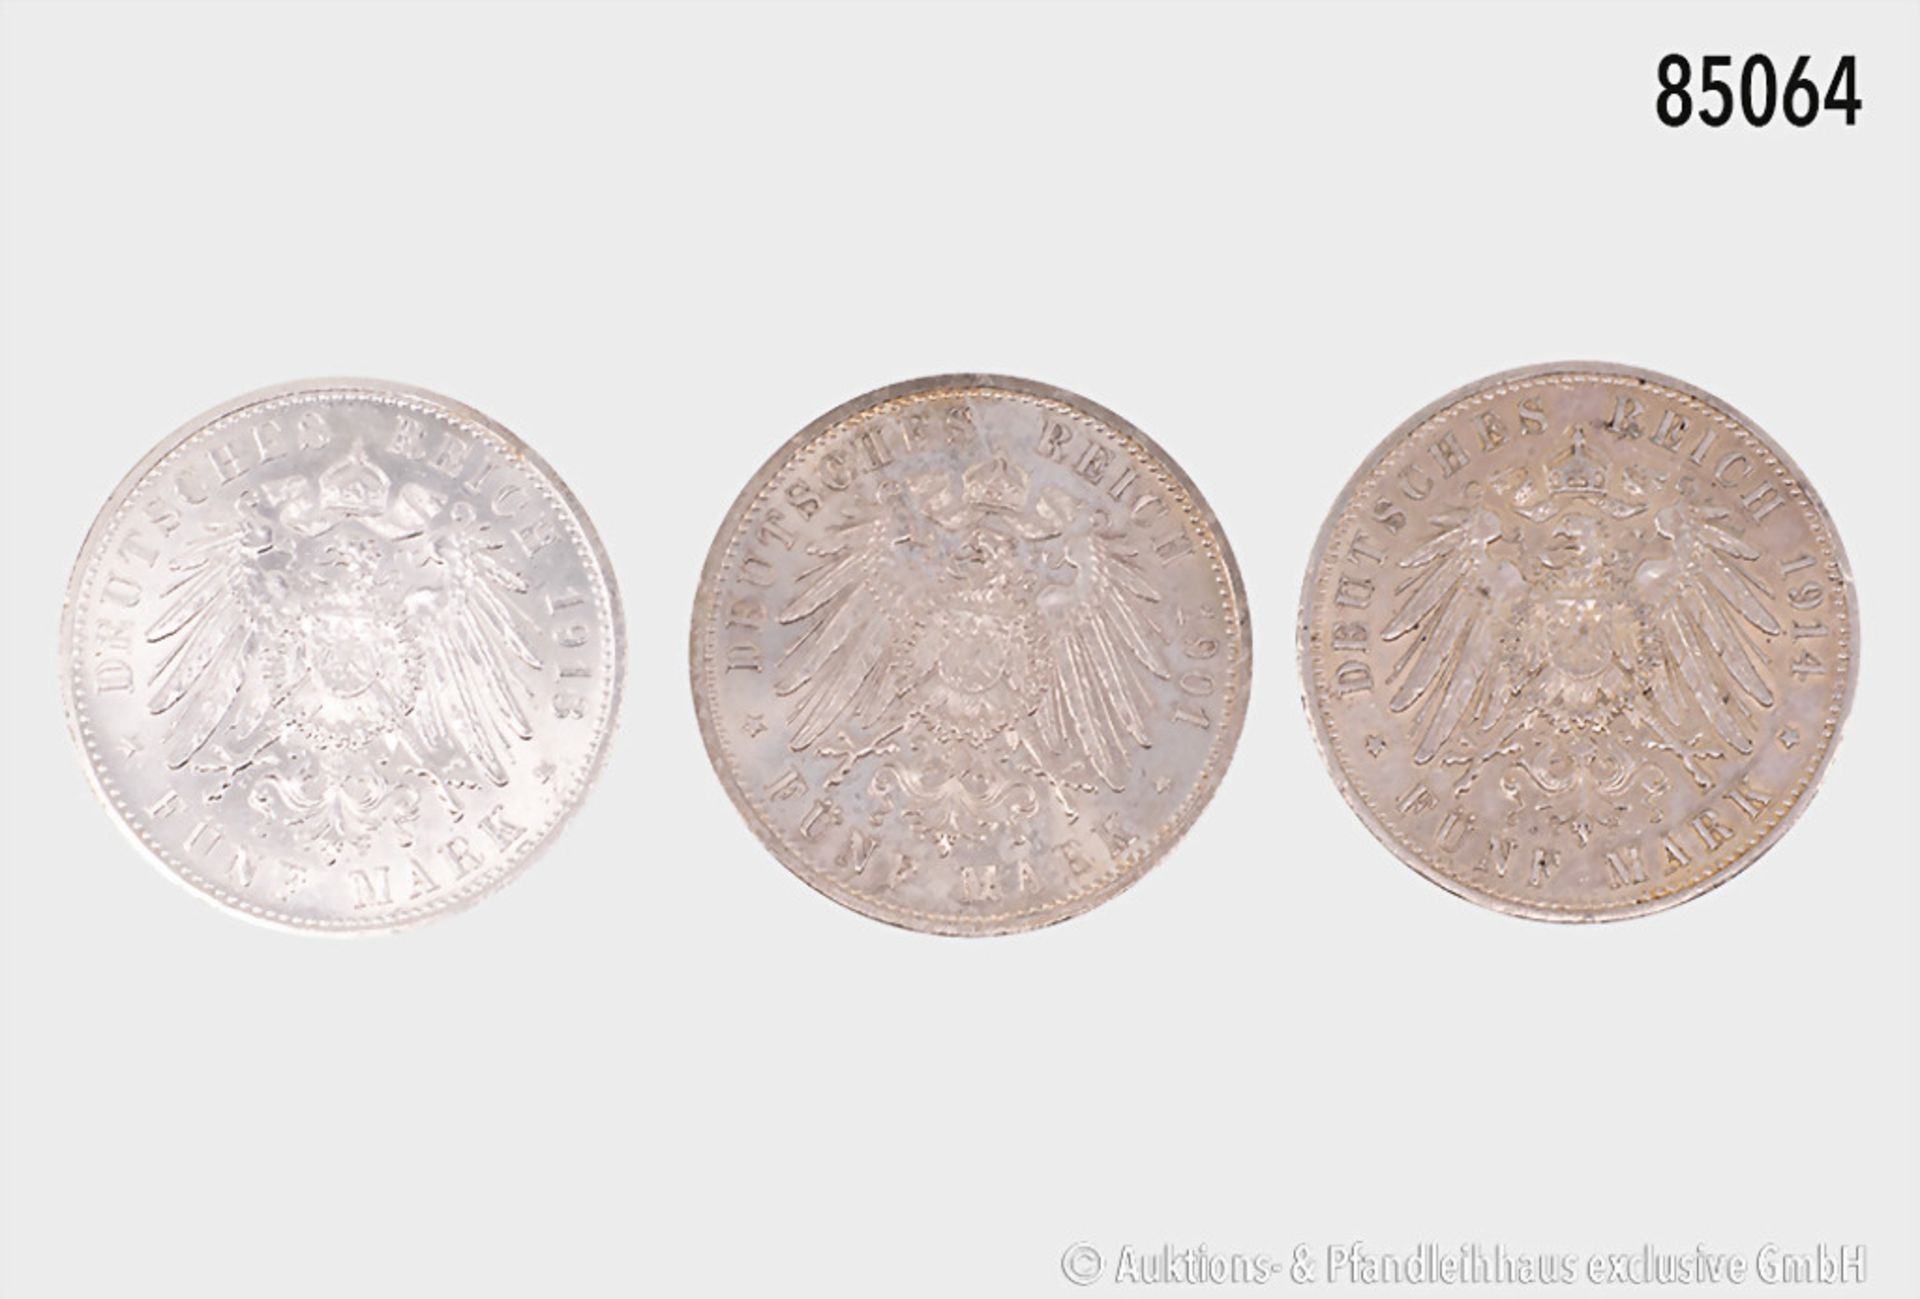 Konv. Preußen 5 Mark 1901, 200 Jahre Königreich Preußen, AKS 135, 1913 und 1914, AKS ... - Bild 2 aus 2